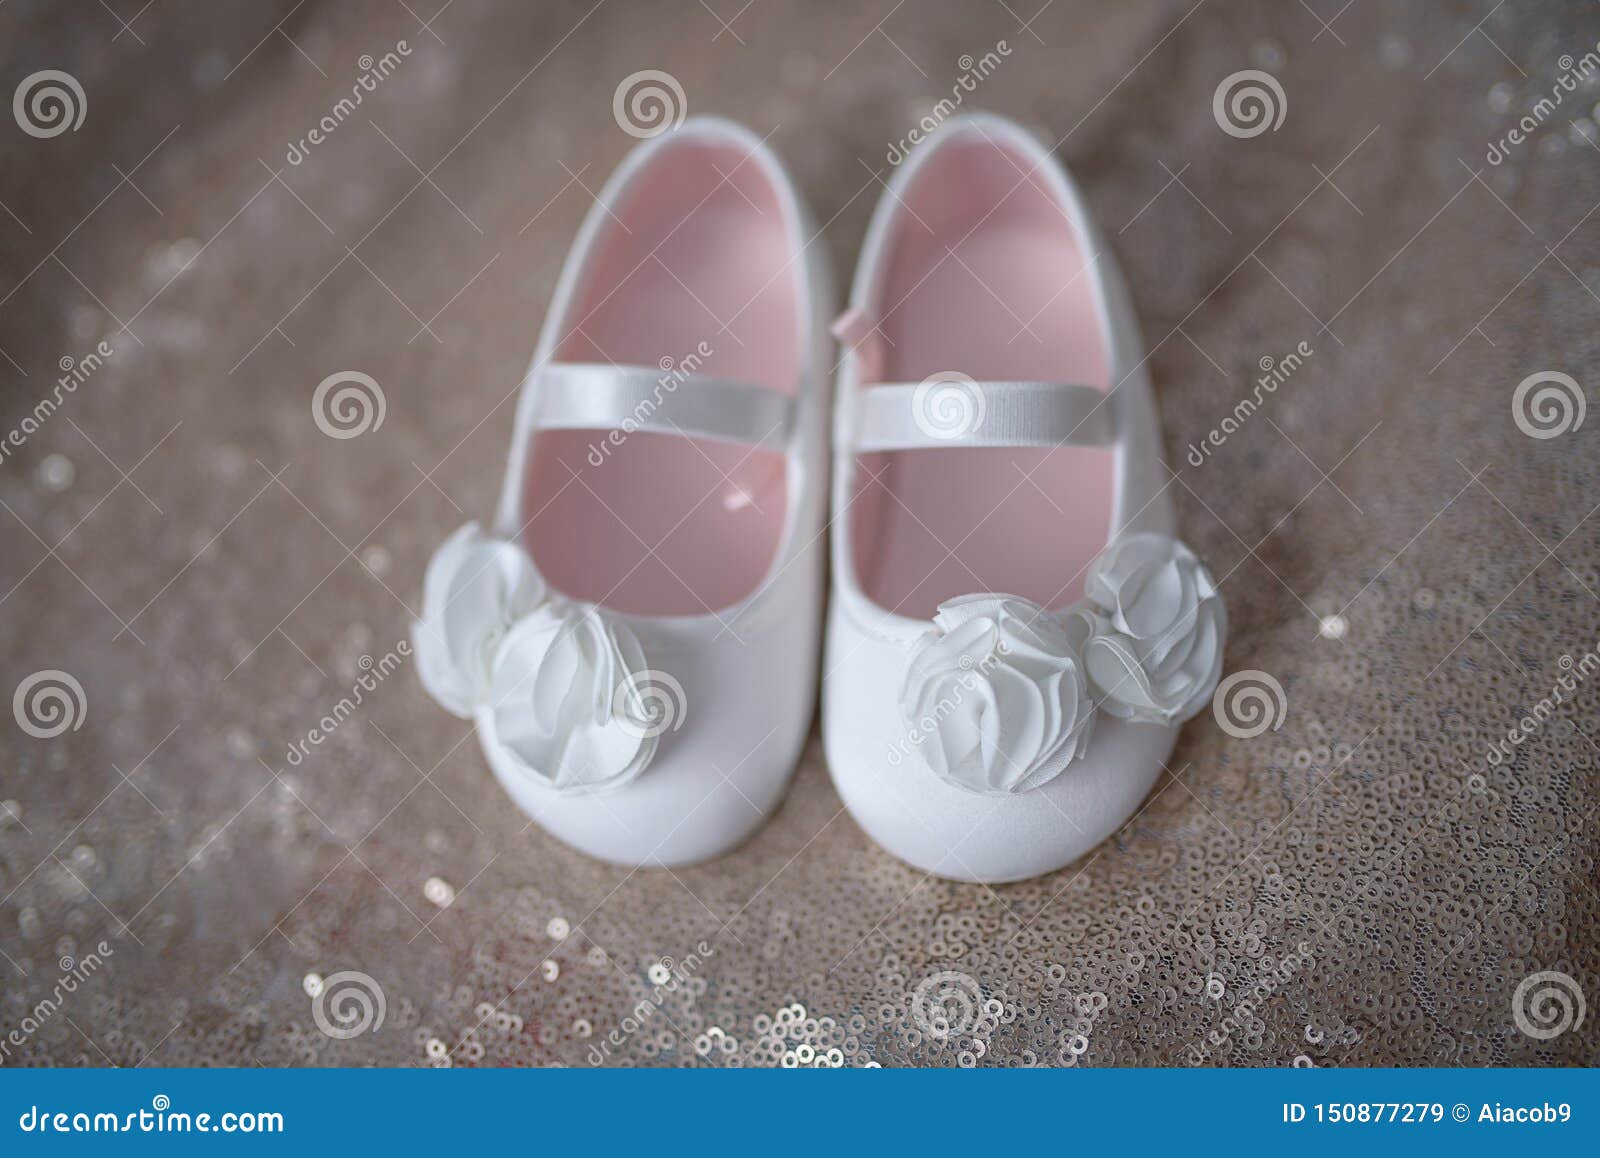 Zapatos Blancos Elegantes De La Bailarina Las Niñas O Botines Del Bebé Con Las Flores Blancas De La Gasa Y La Correa Elastic de archivo - Imagen de calzado, hermoso: